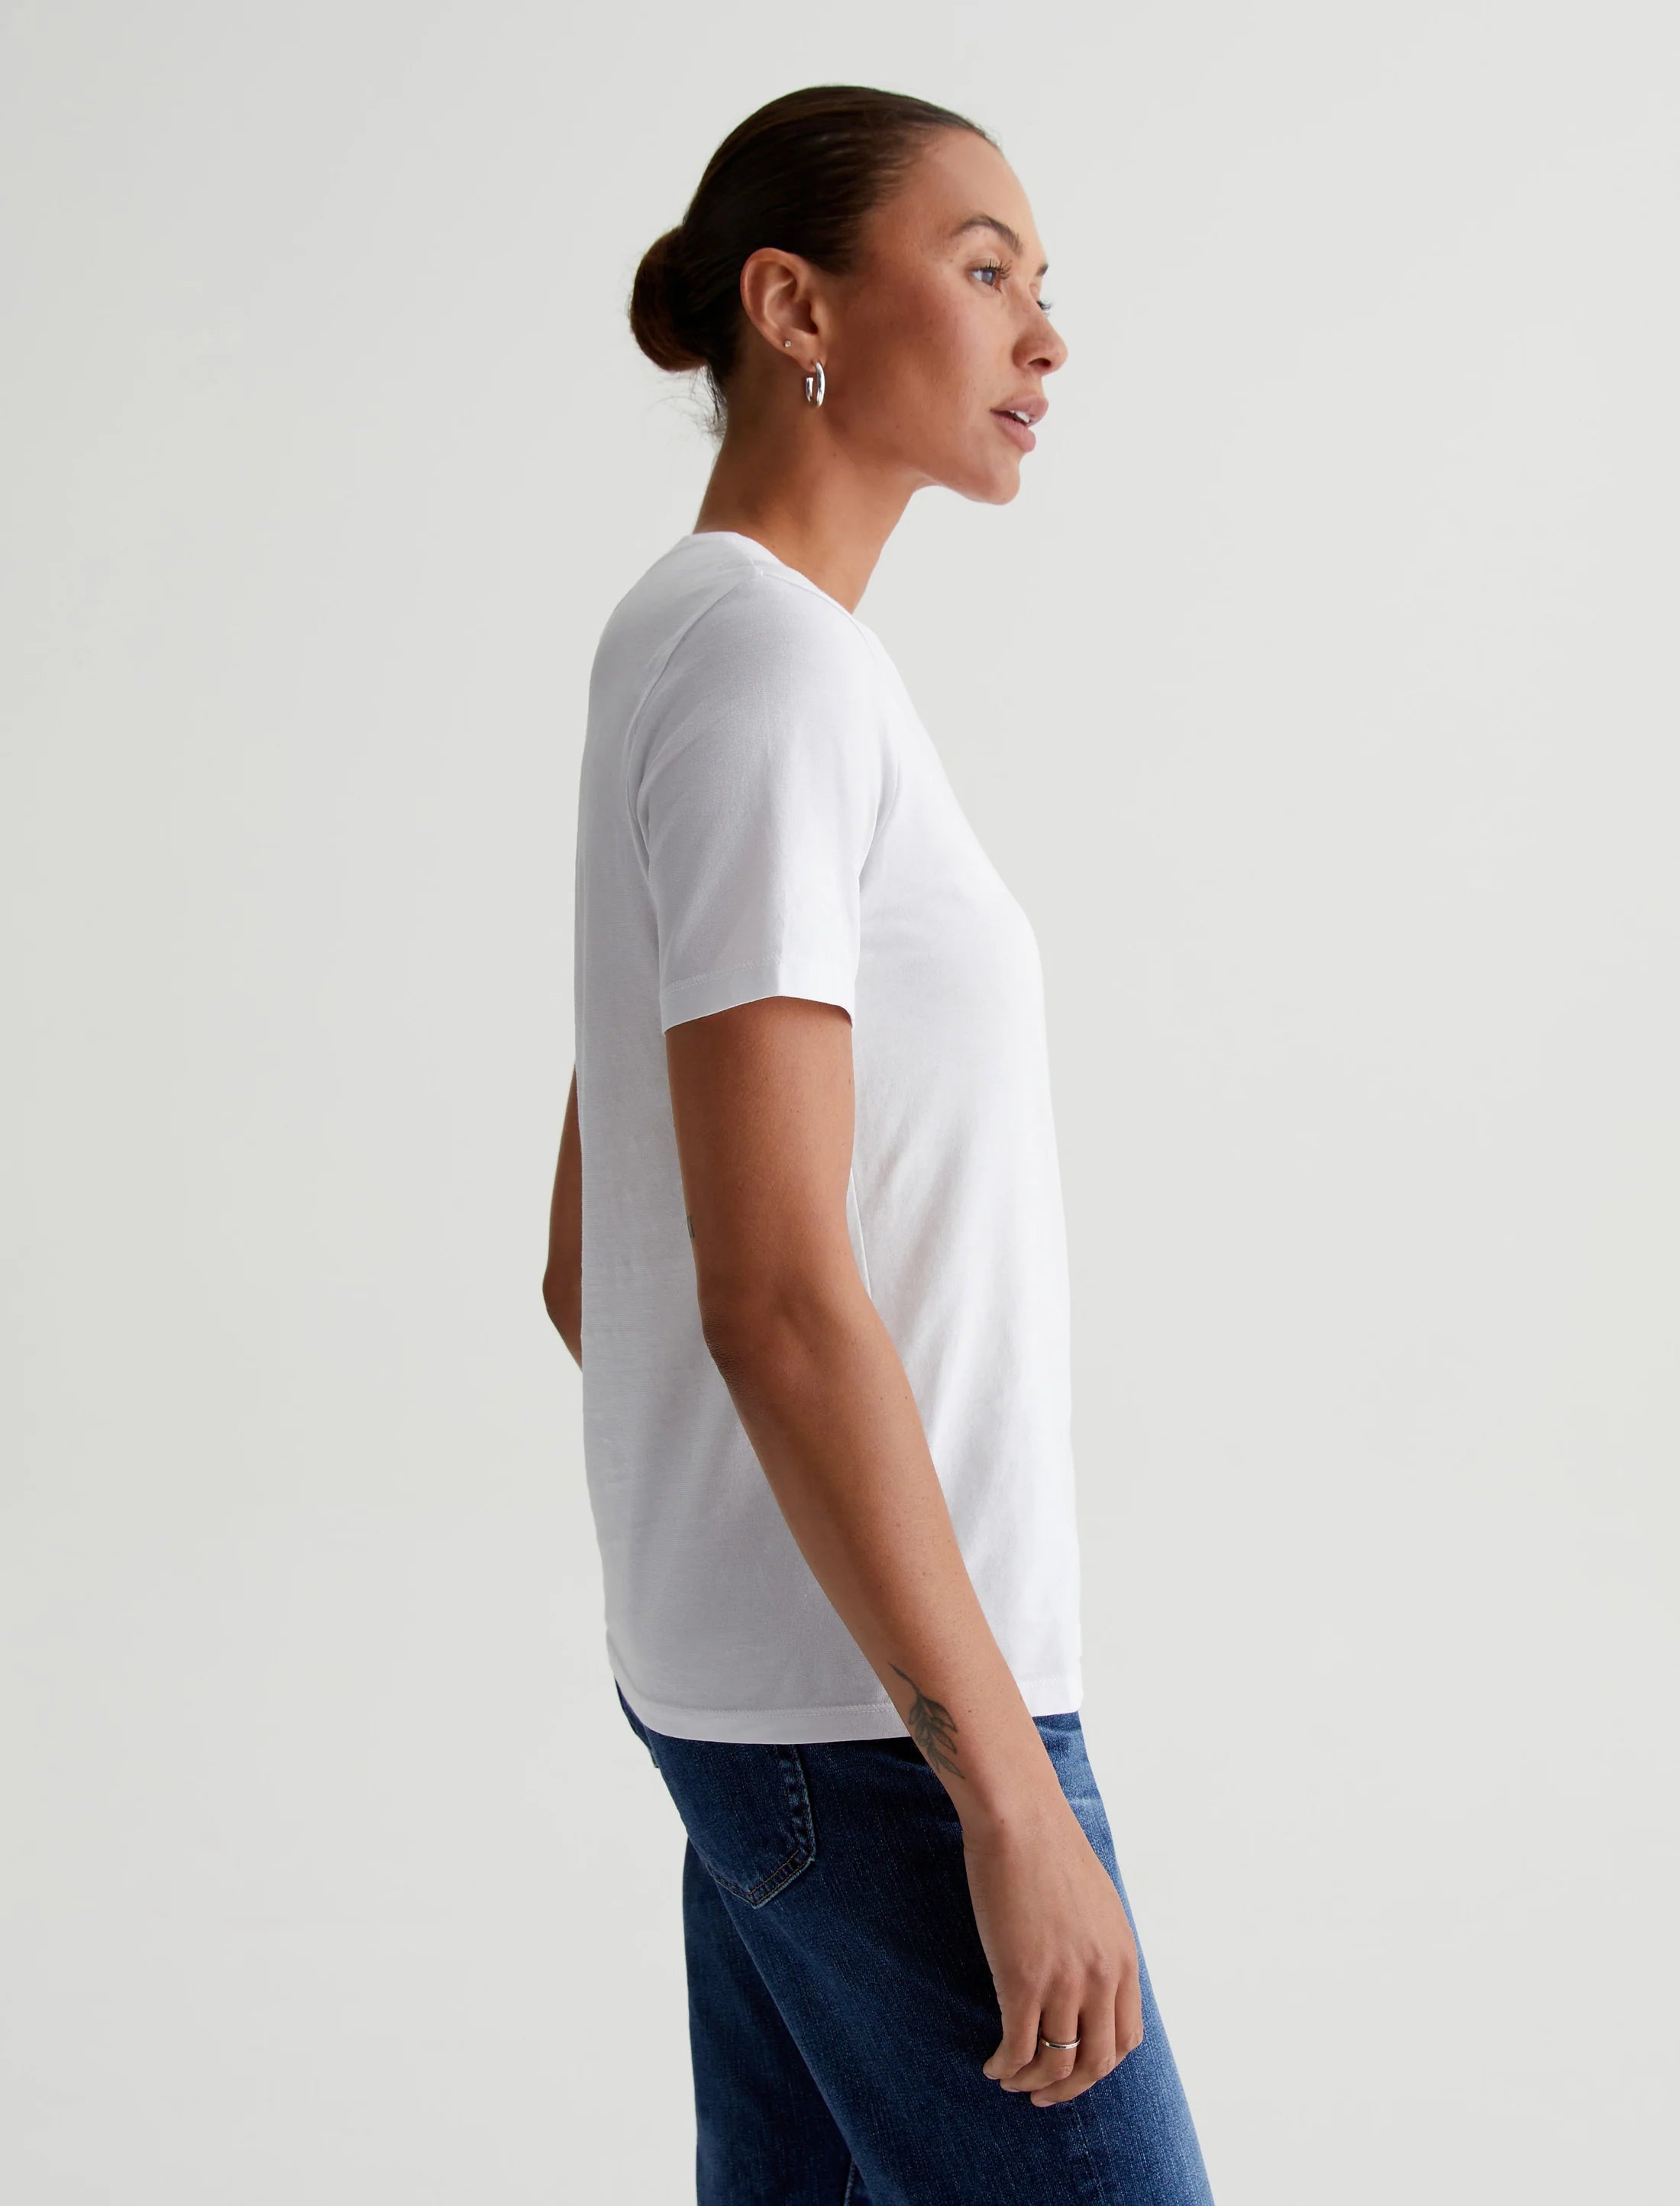 AG Jeans - White Crew Neck T-shirt